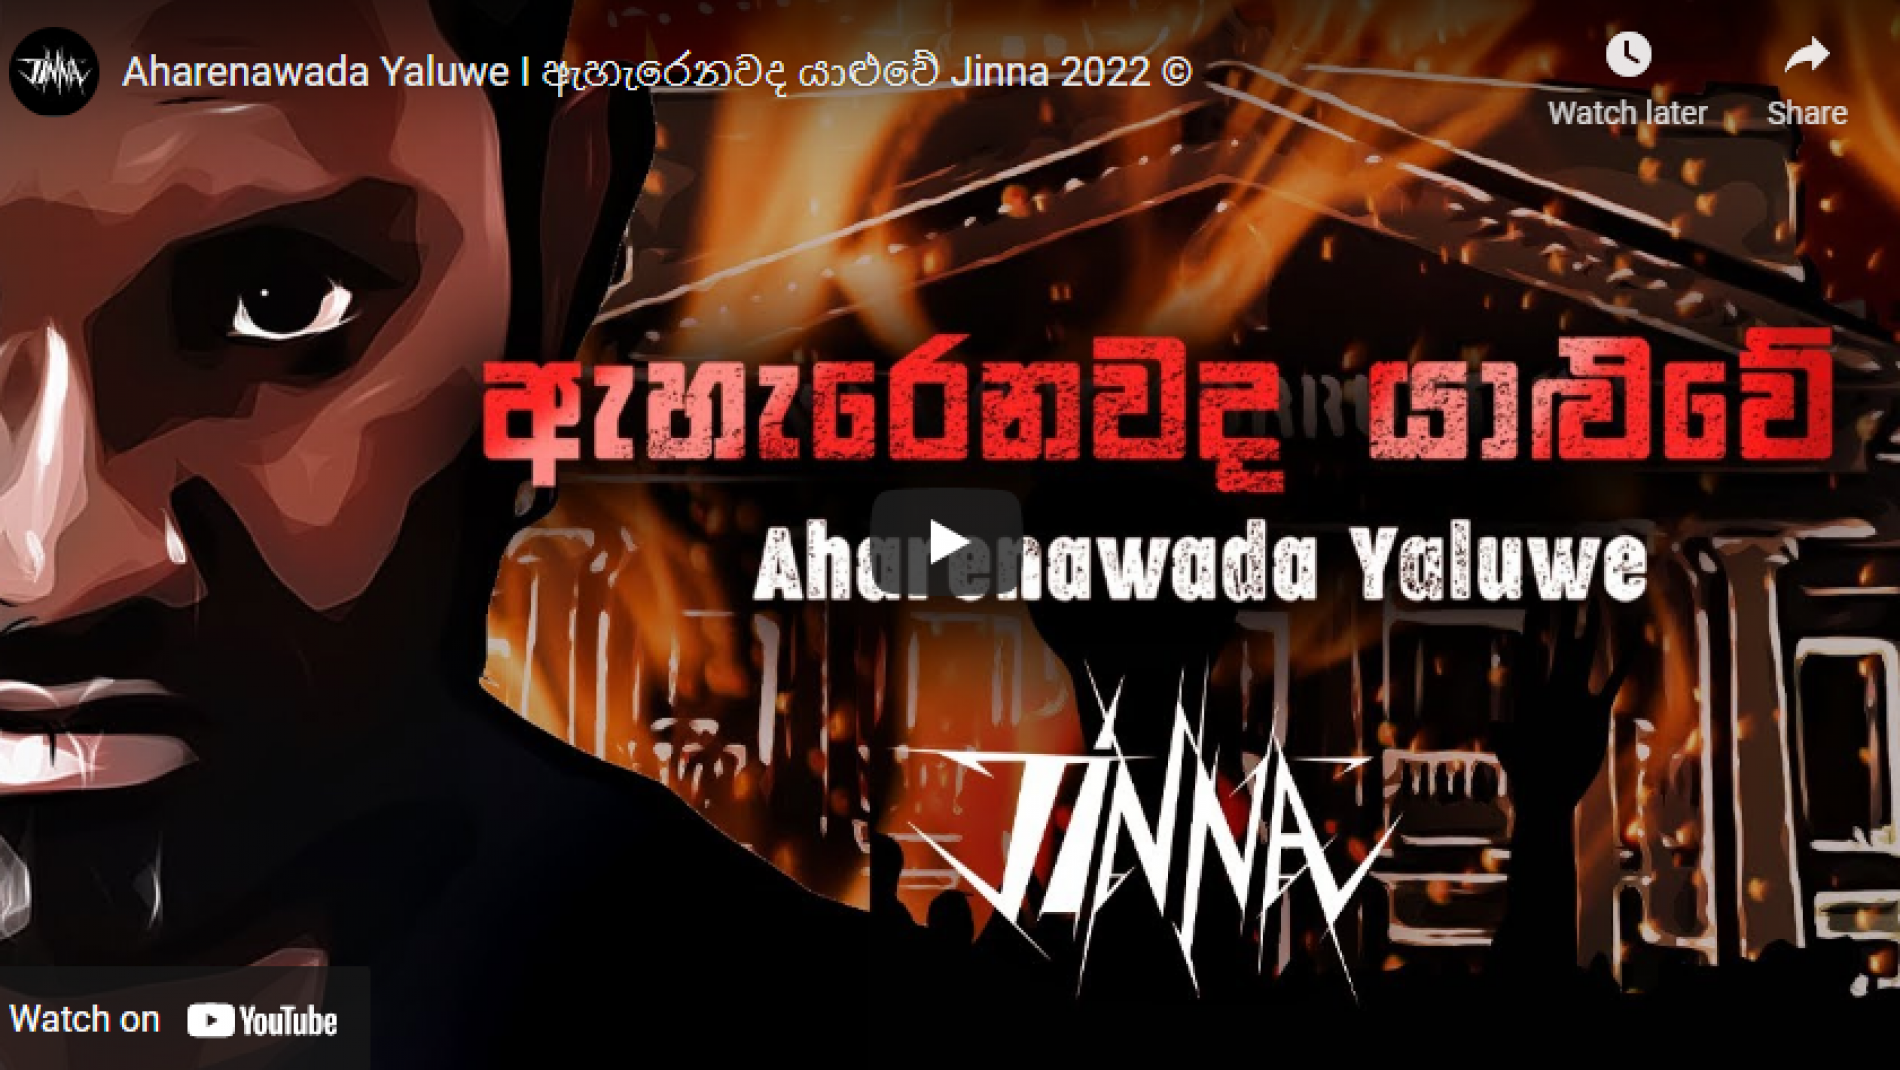 New Music : Aharenawada Yaluwe I ඇහැරෙනවද යාළුවේ Jinna 2022 ©